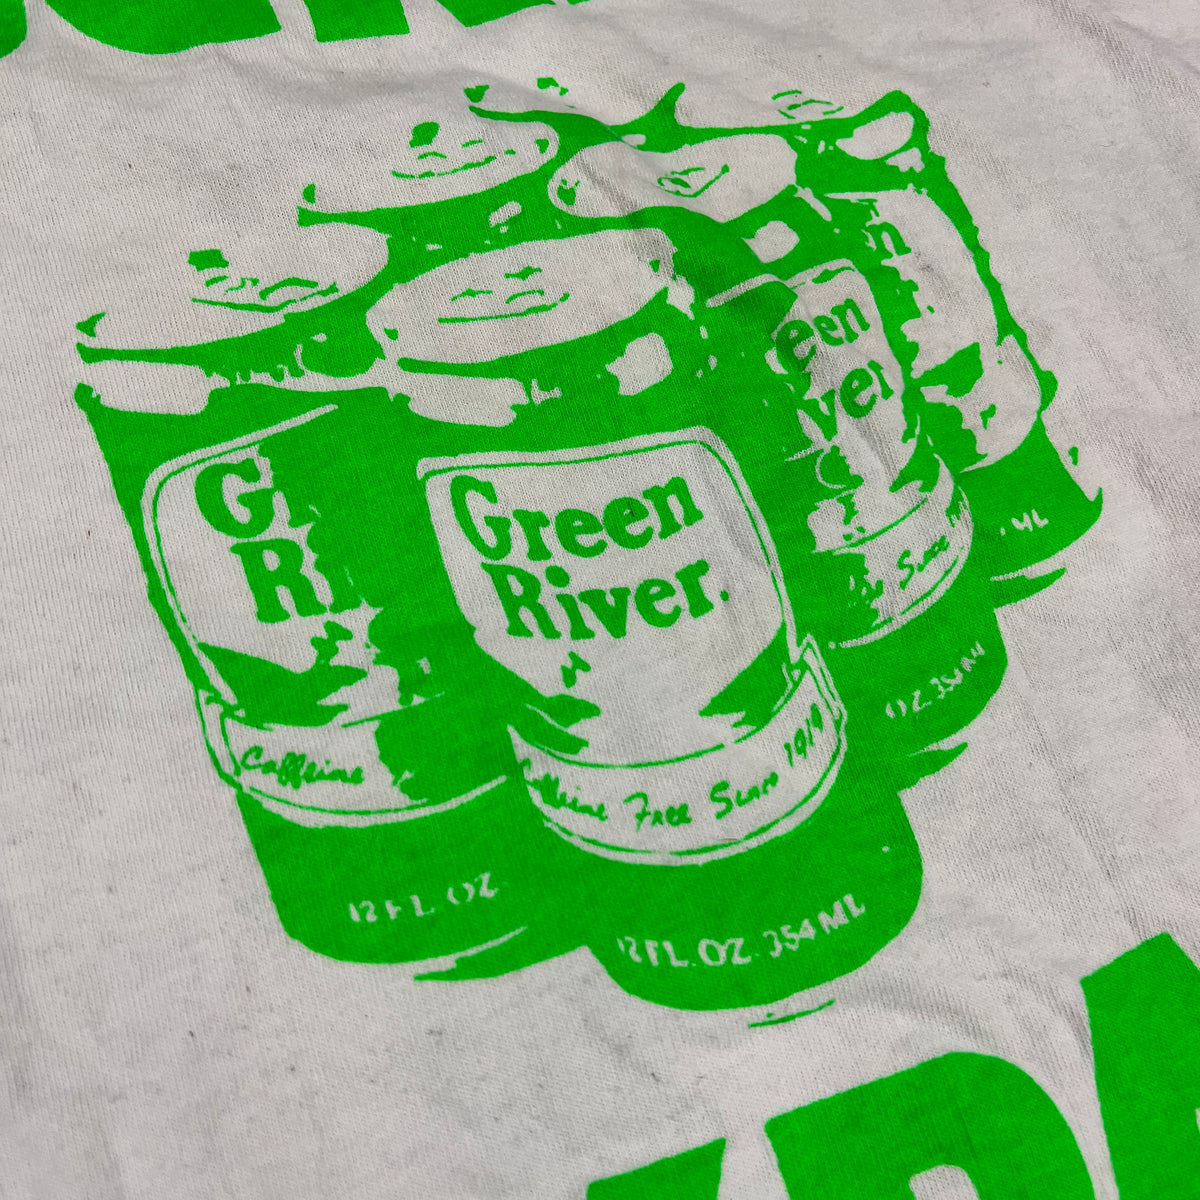 Vintage Green River &quot;Death On 10 Legs&quot; T-Shirt